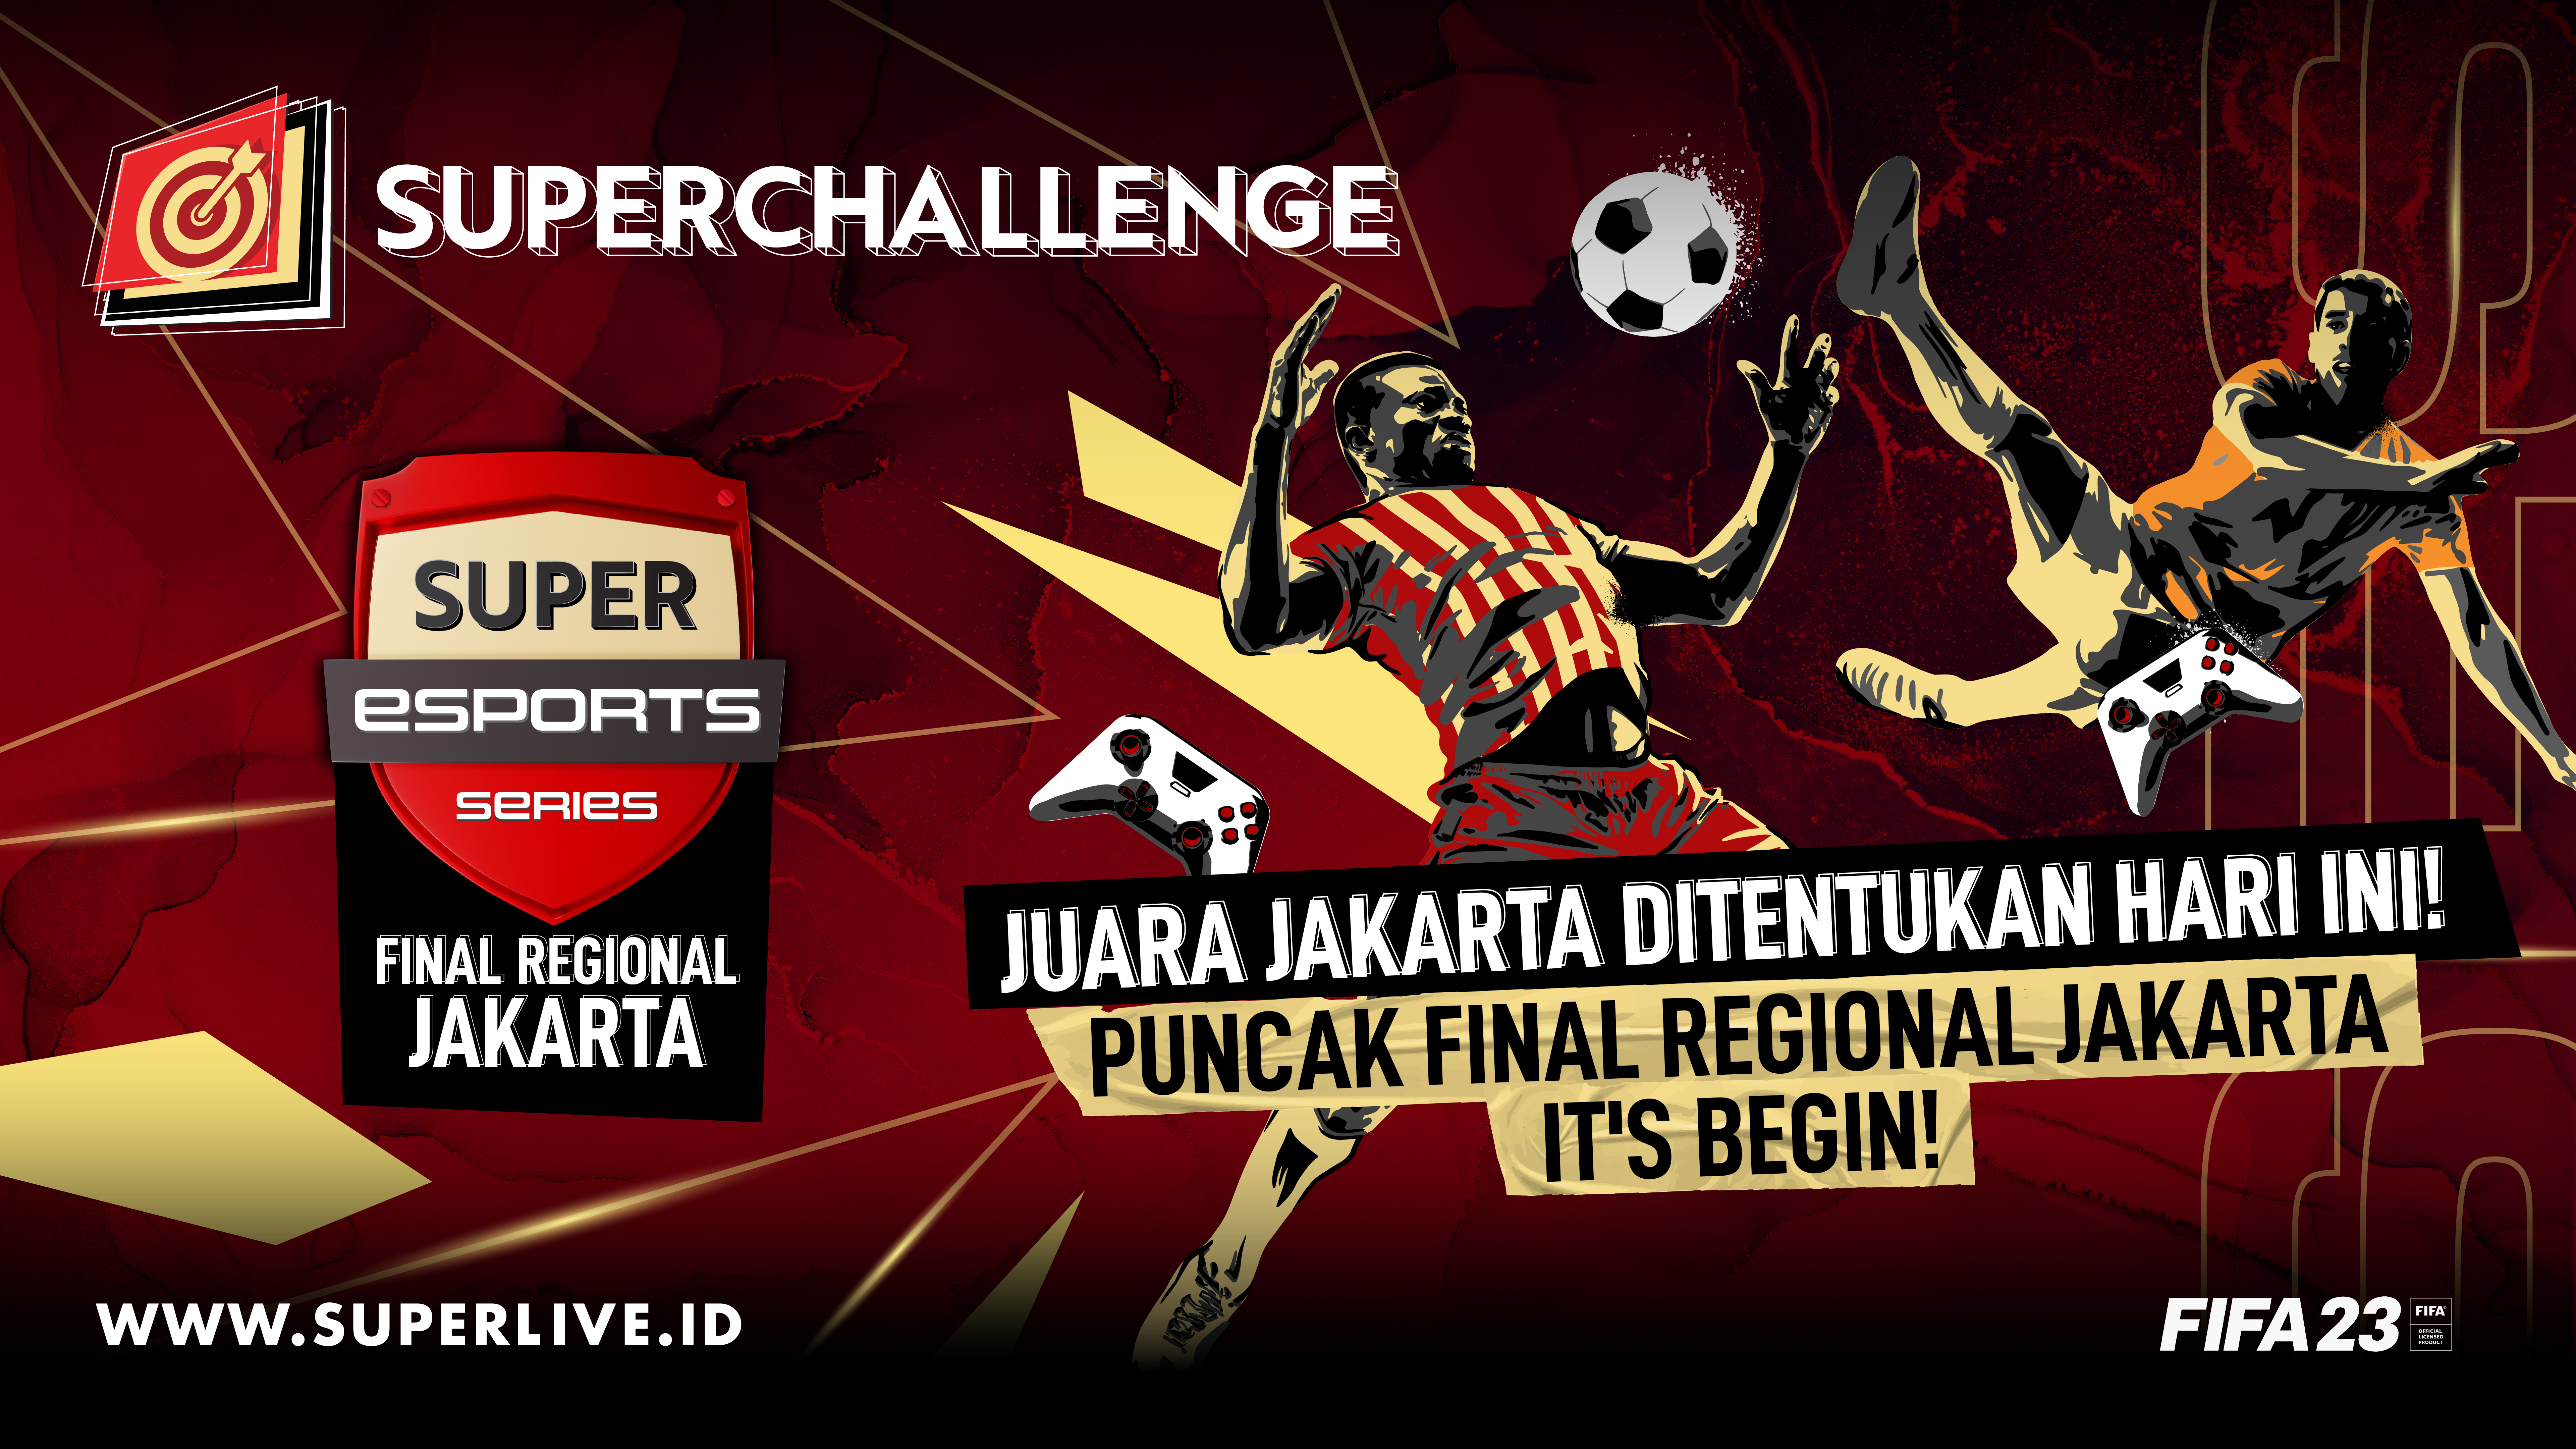 Sang Juara Jakarta Super Esports Series FIFA 2023 Final Regional Jakarta Ditentukan Hari Ini, Lo Harus Jadi Saksinya!